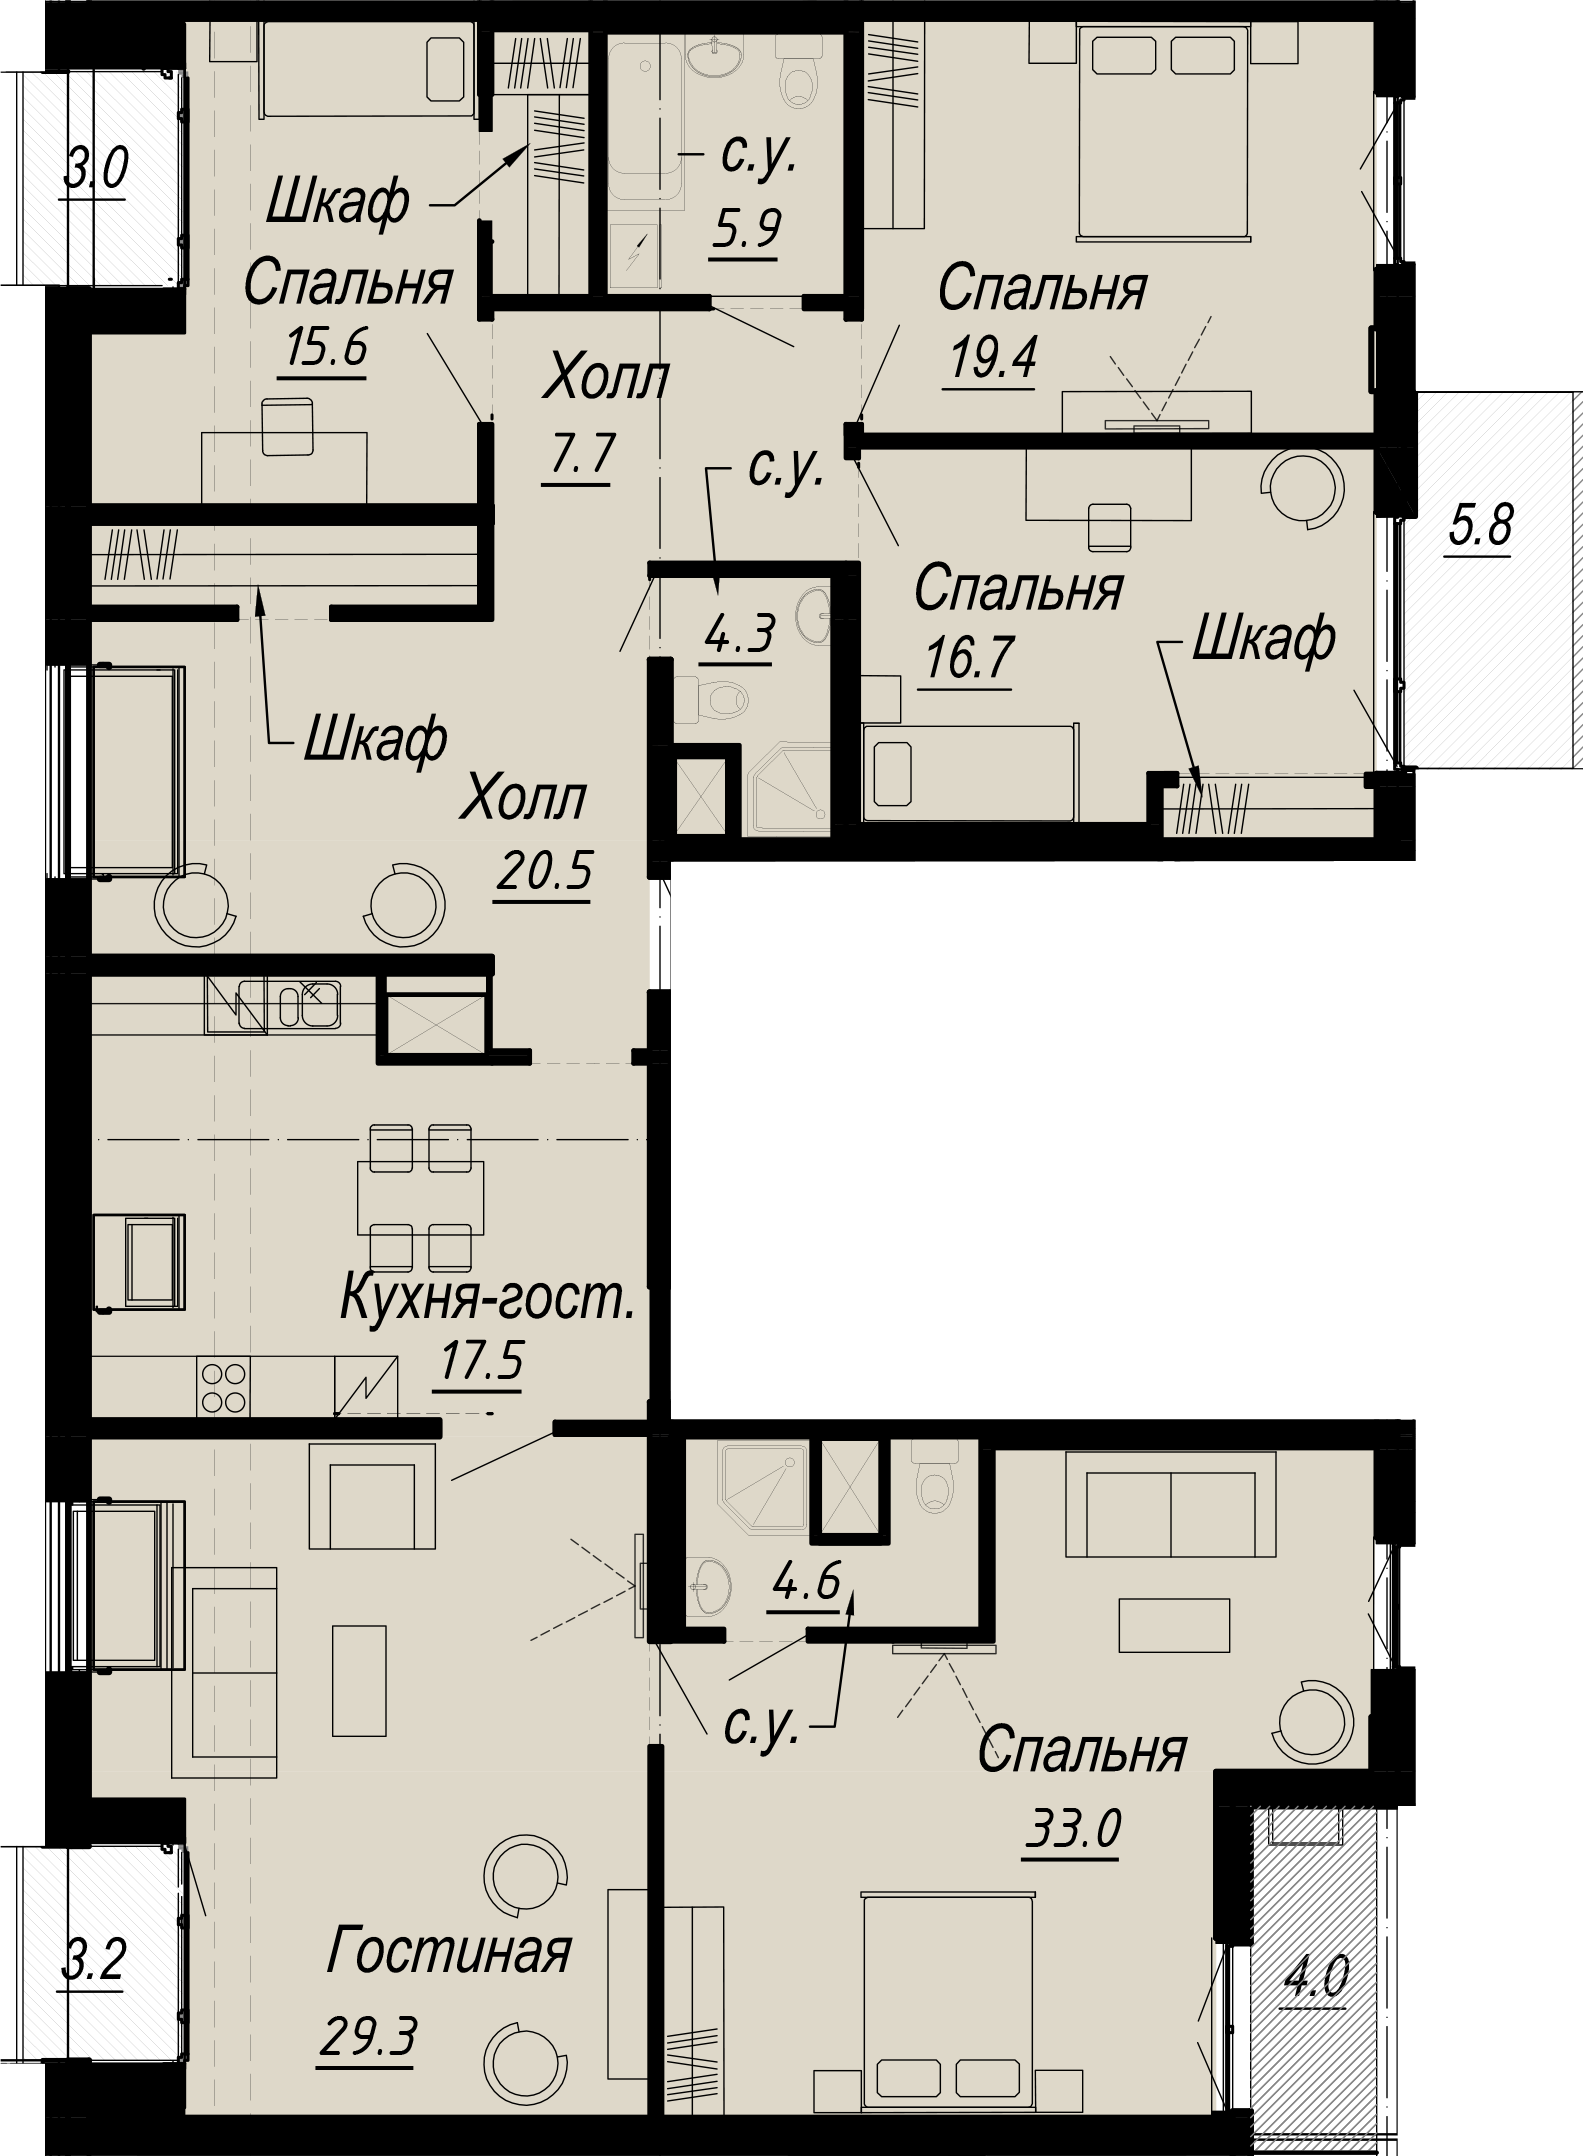 5-комнатная квартира  №9-8 в Meltzer Hall: 178.1 м², этаж 8 - купить в Санкт-Петербурге